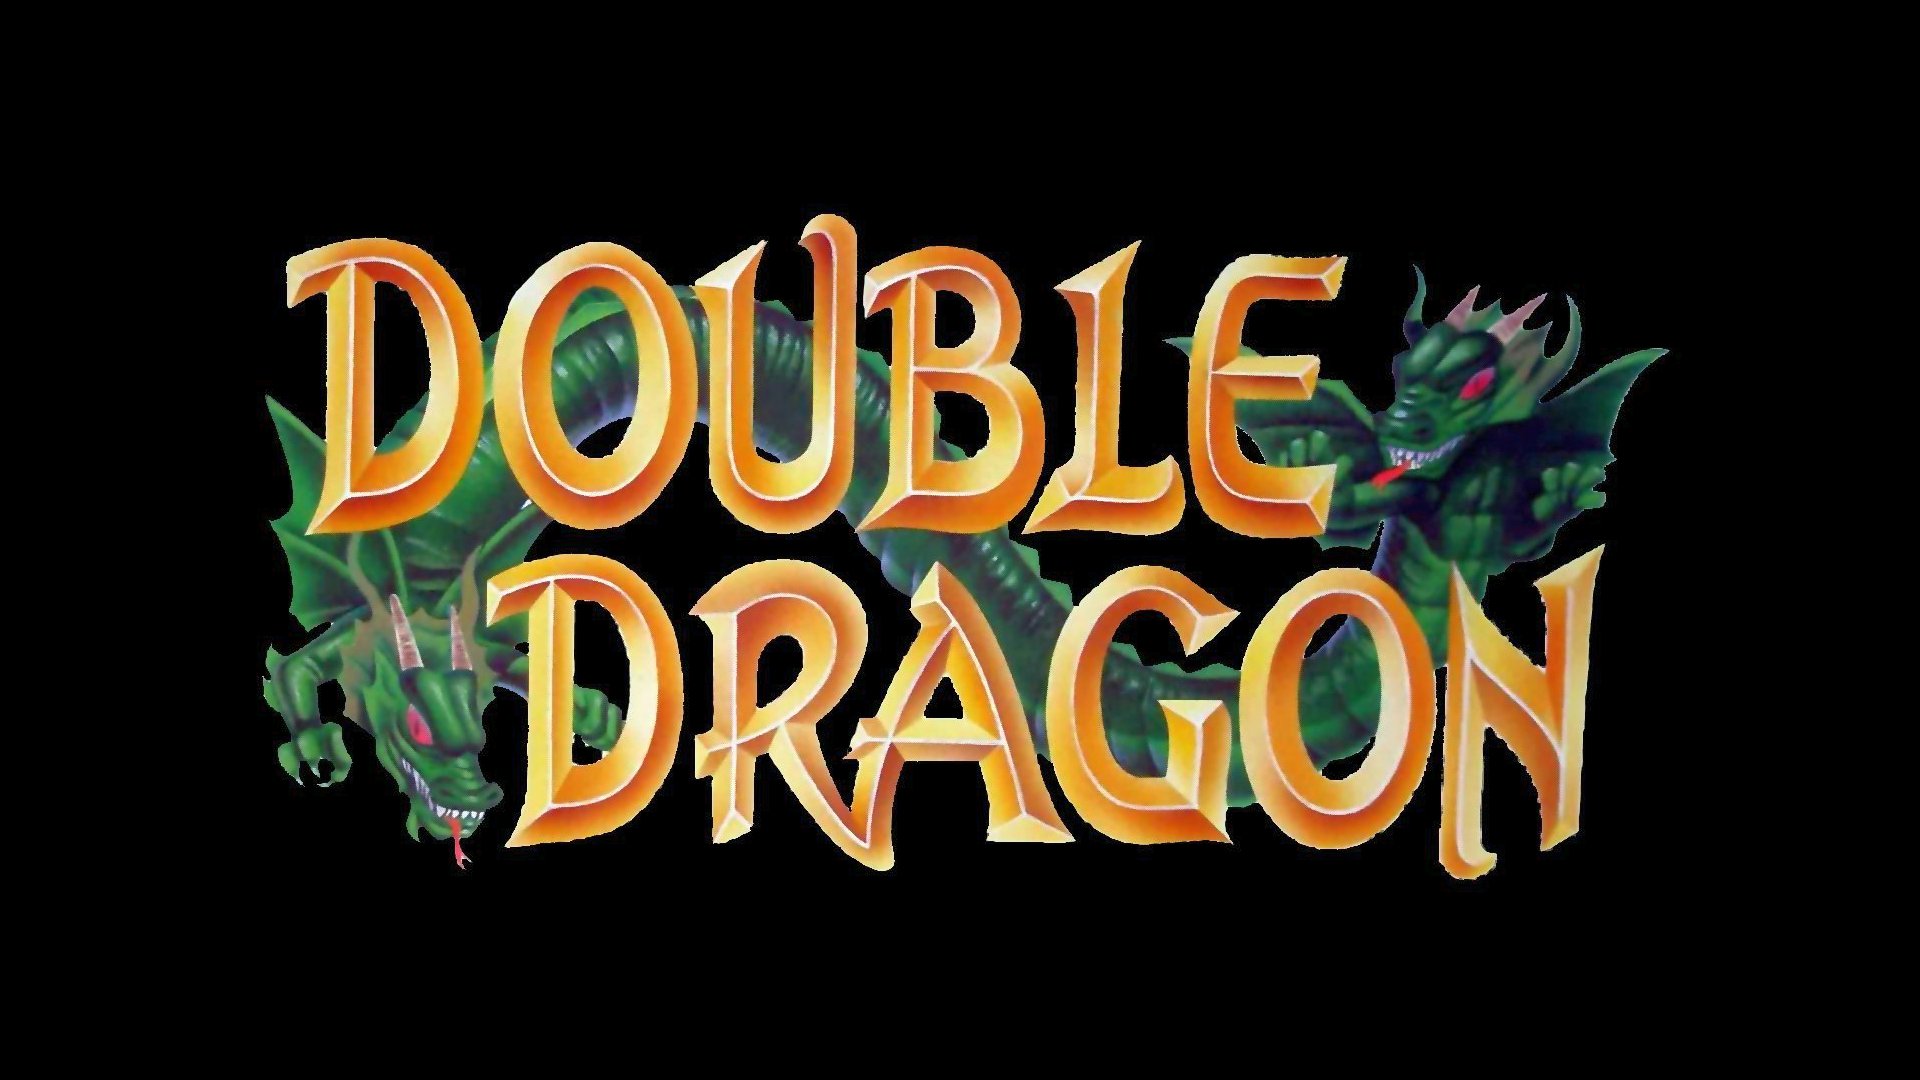 Double Dragon Wallpaper